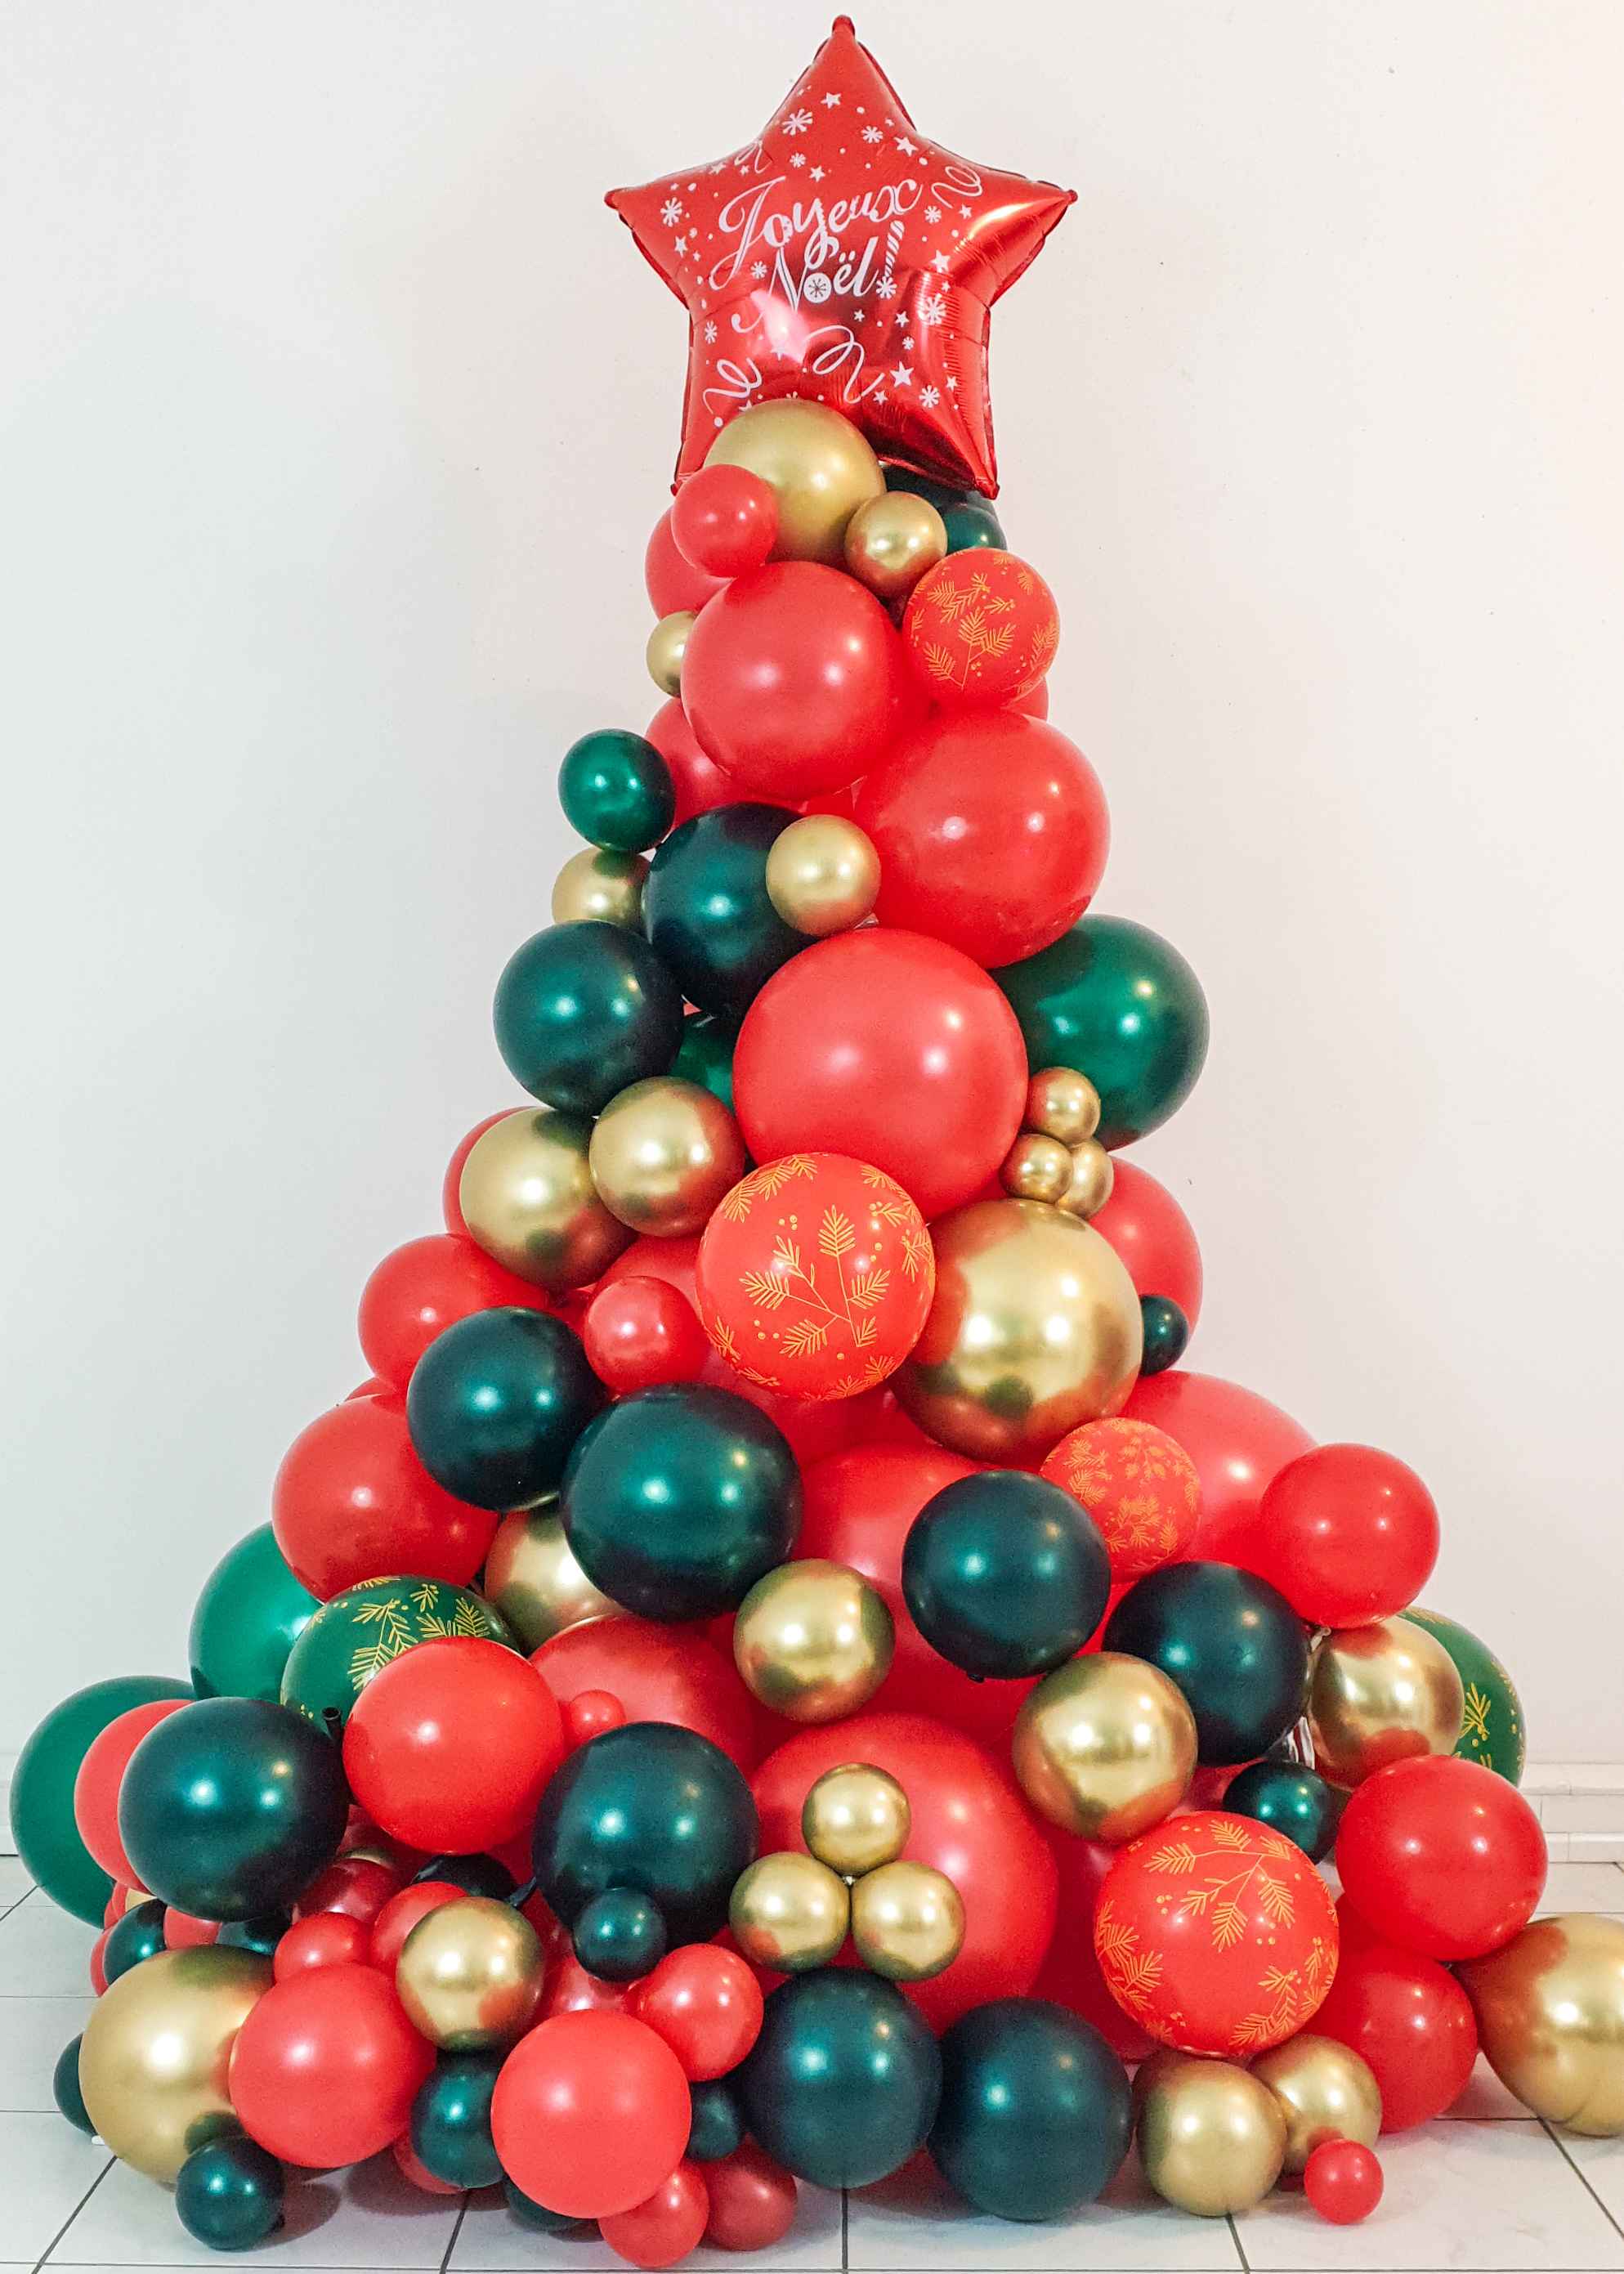 Ballon Sapin de Noël Vert - Décorations De Noël 